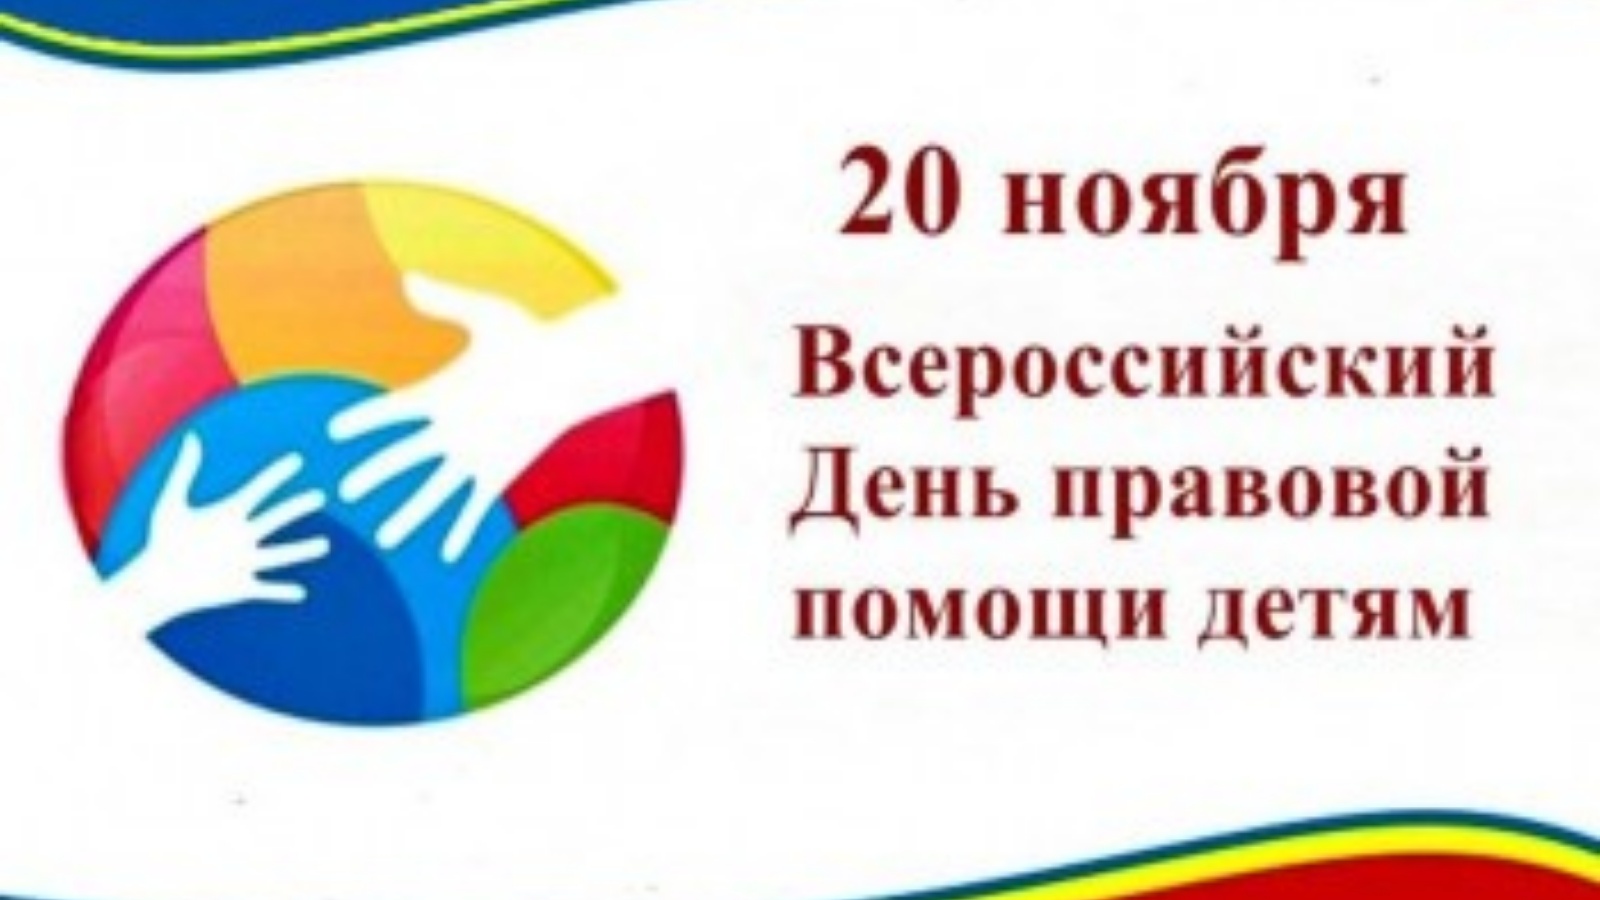 20 Ноября Всероссийский день правовой помощи детям